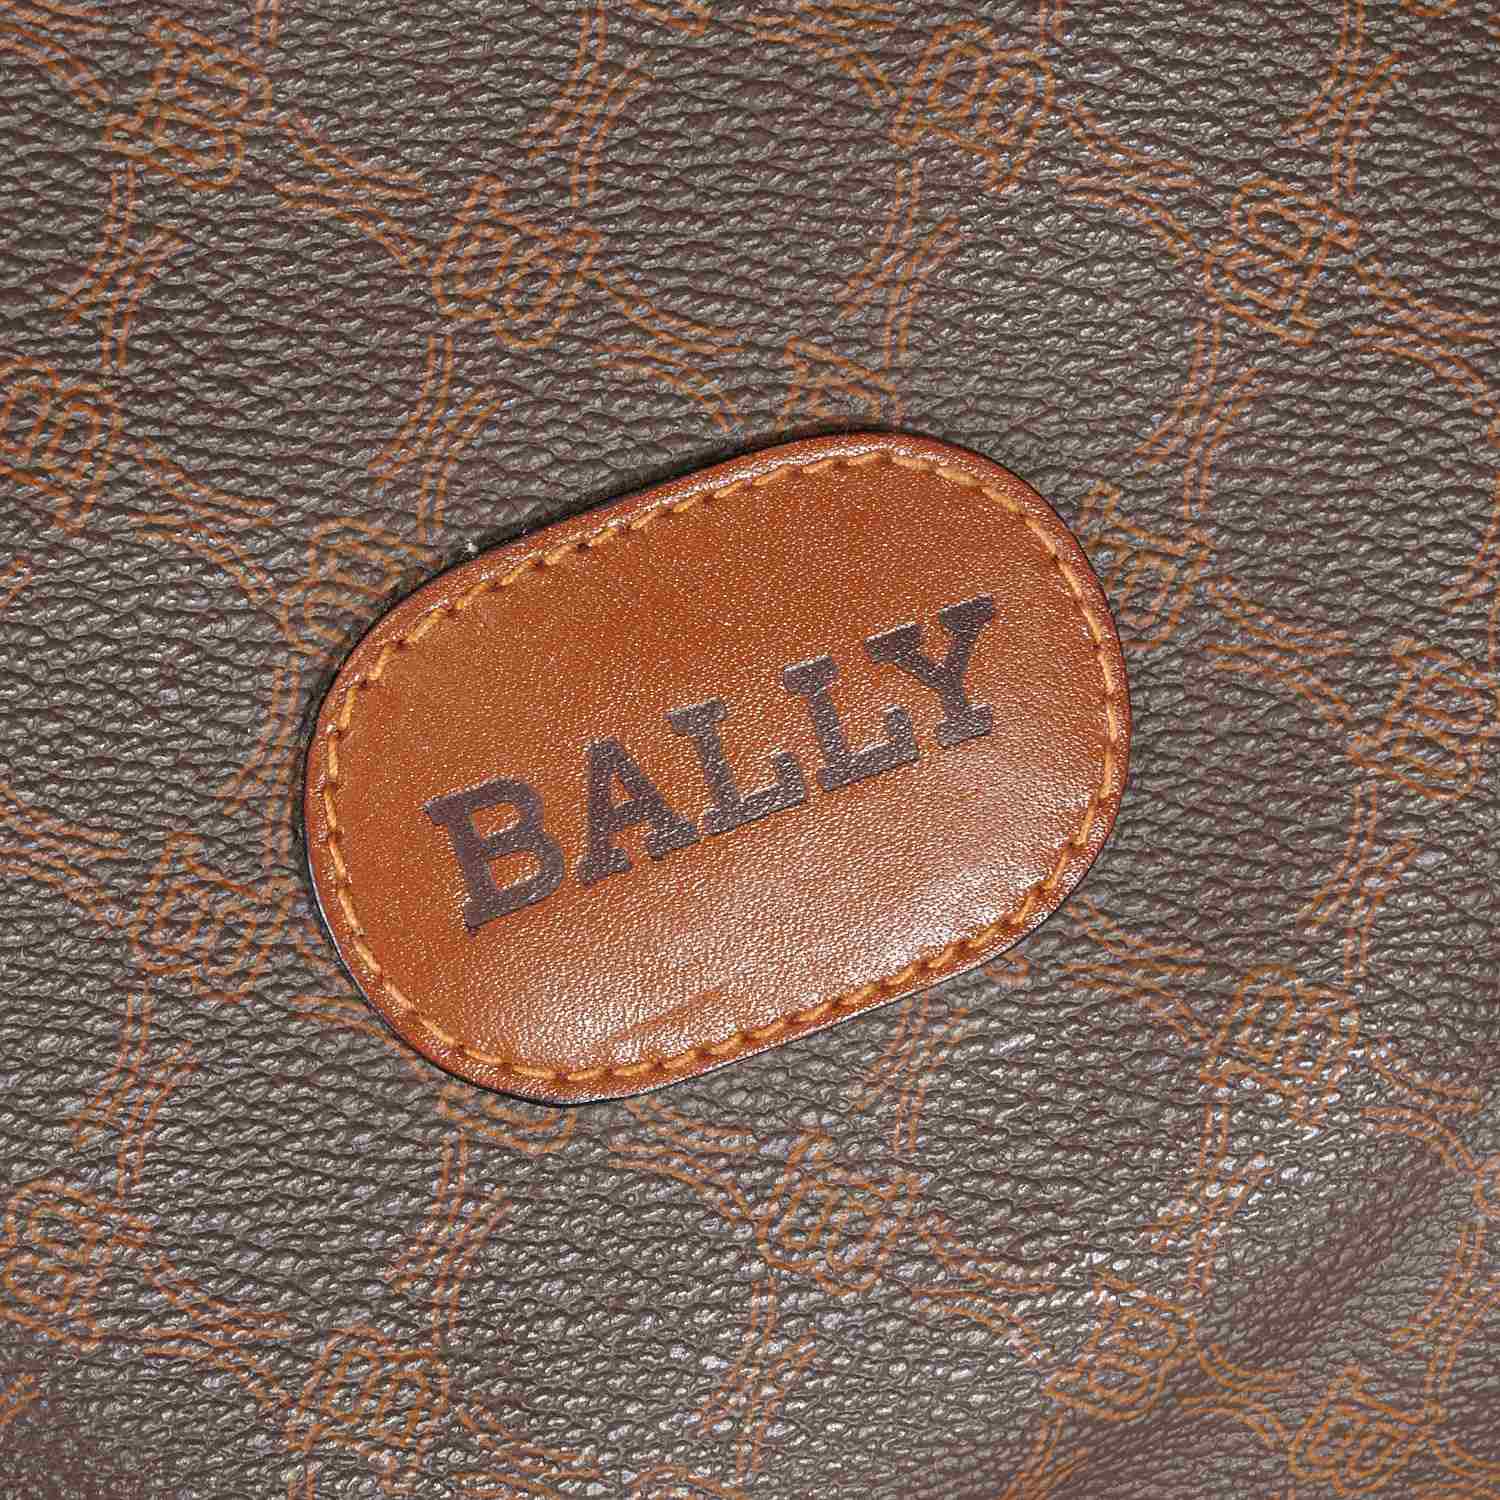 Bally NS Keep on Monogram Top Handle Bag